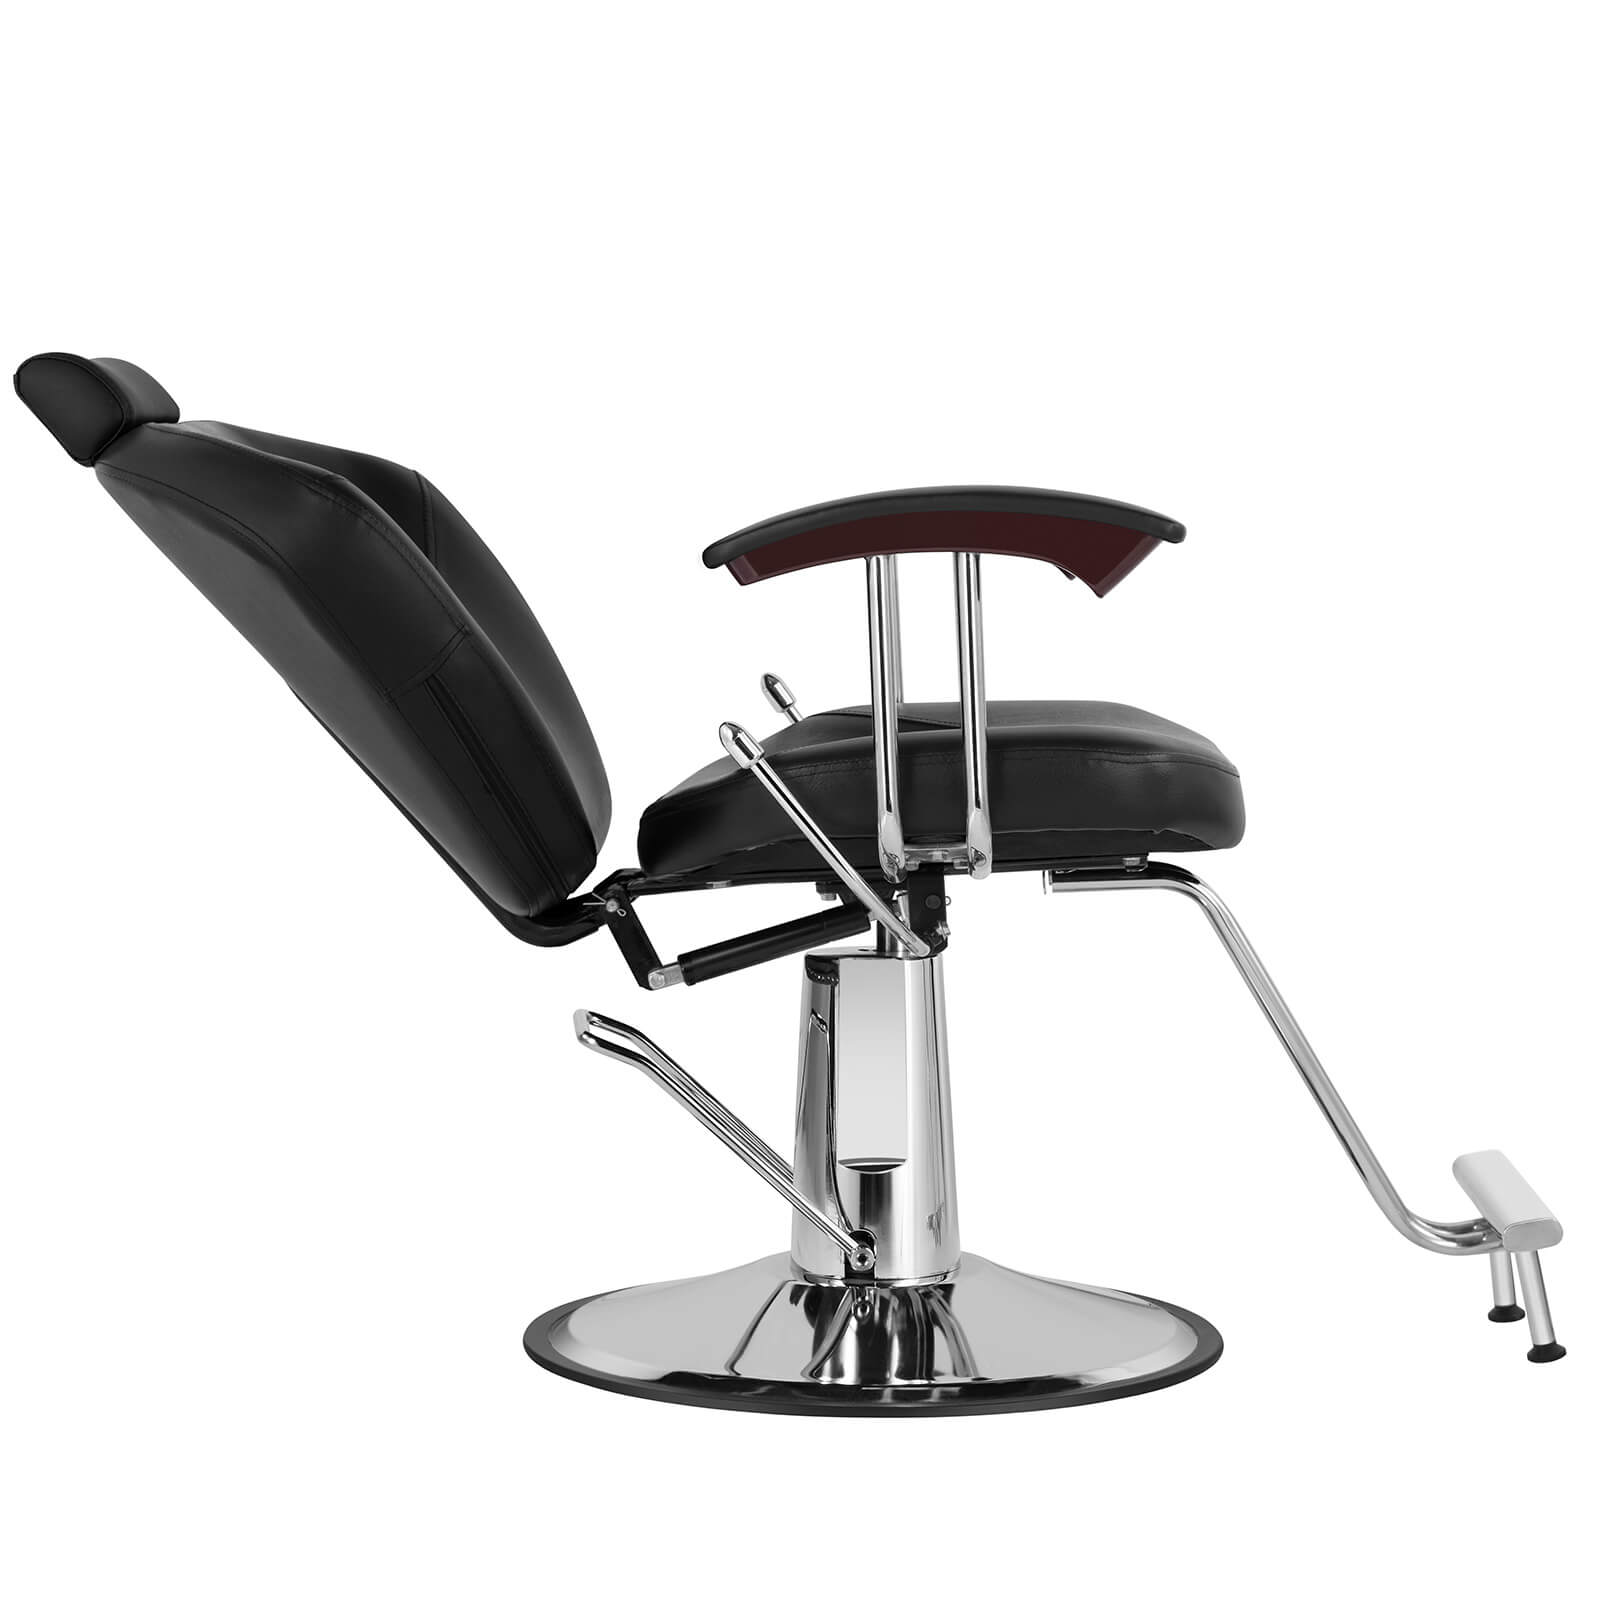 #5002 Sillas multiusos para barbería Silla de barbero reclinable, palancas en ambos lados para zurdos